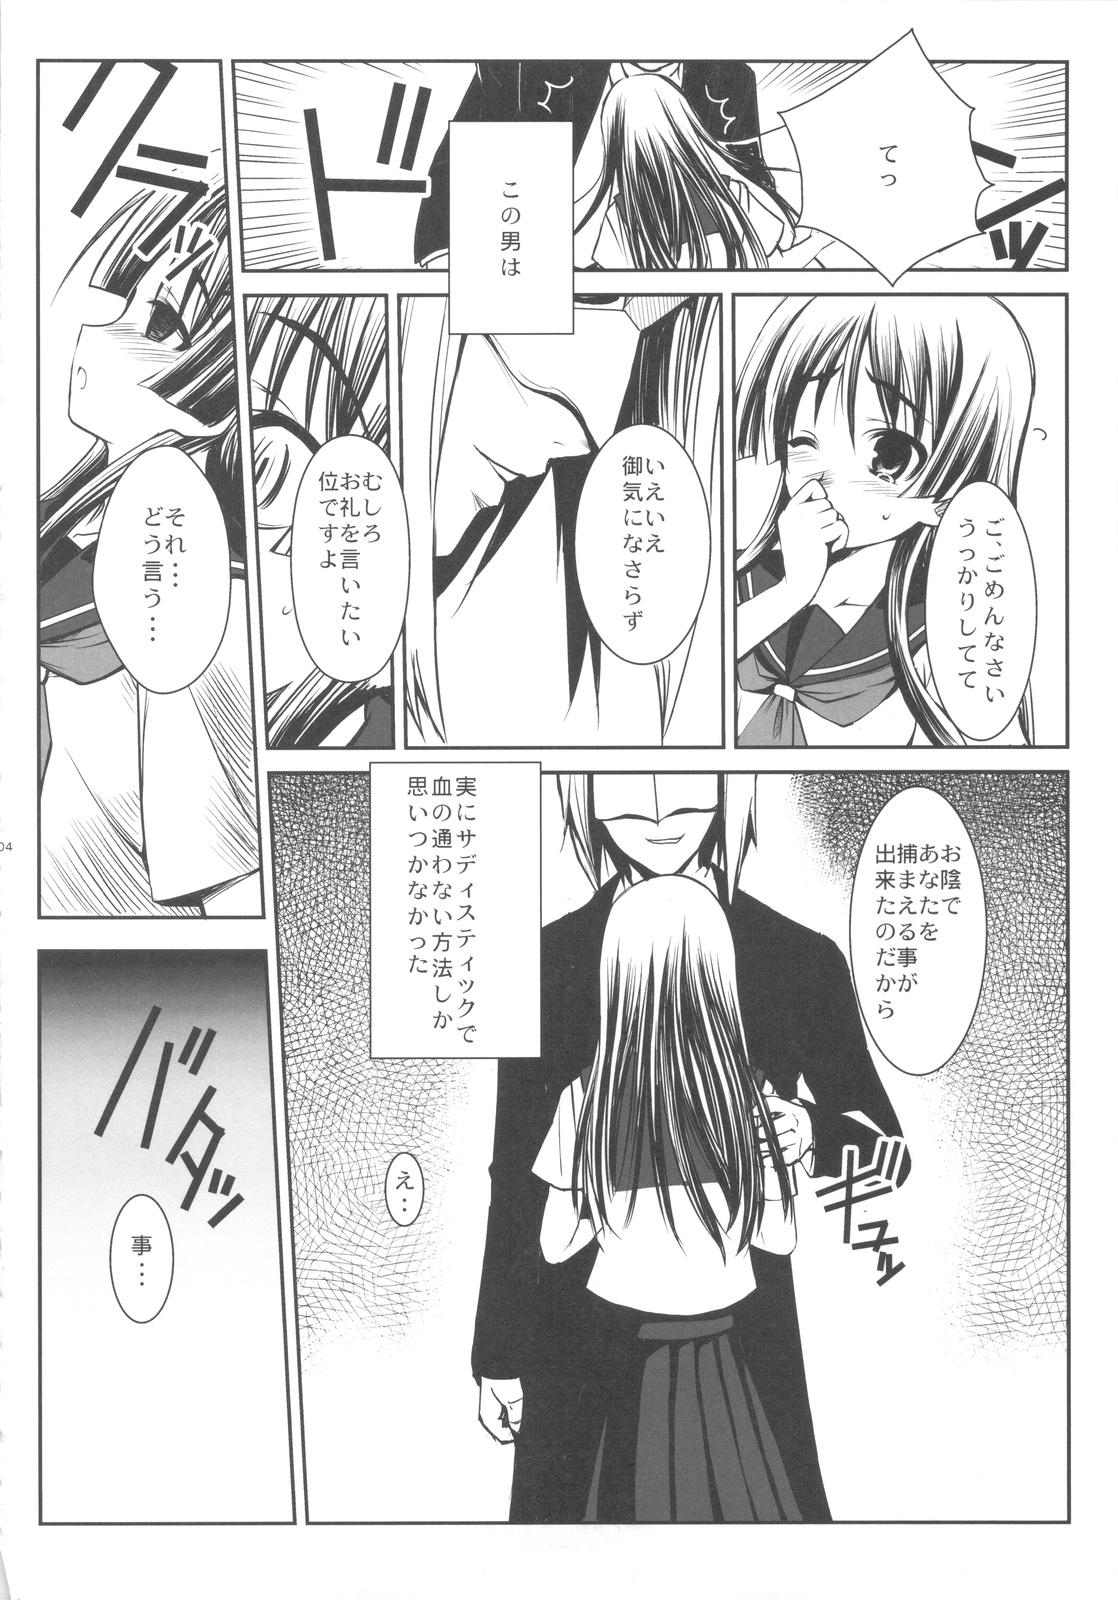 Flagra ERECTLIC THUNDER - Toaru kagaku no railgun Sensual - Page 4